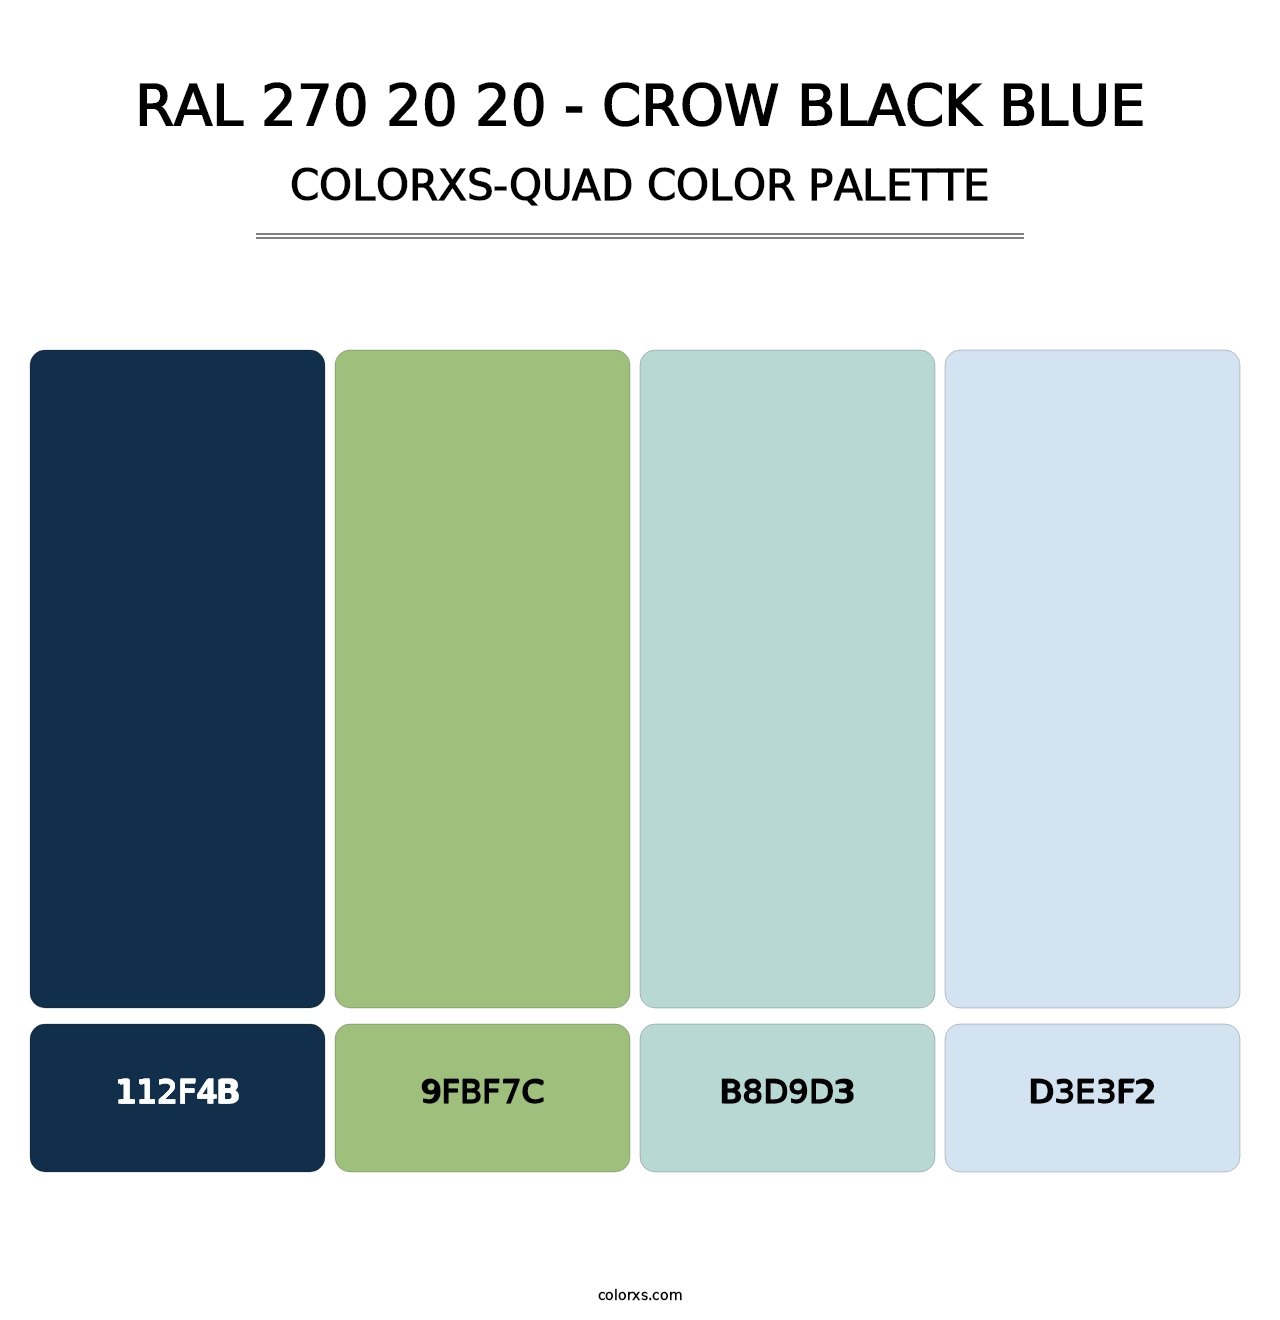 RAL 270 20 20 - Crow Black Blue - Colorxs Quad Palette